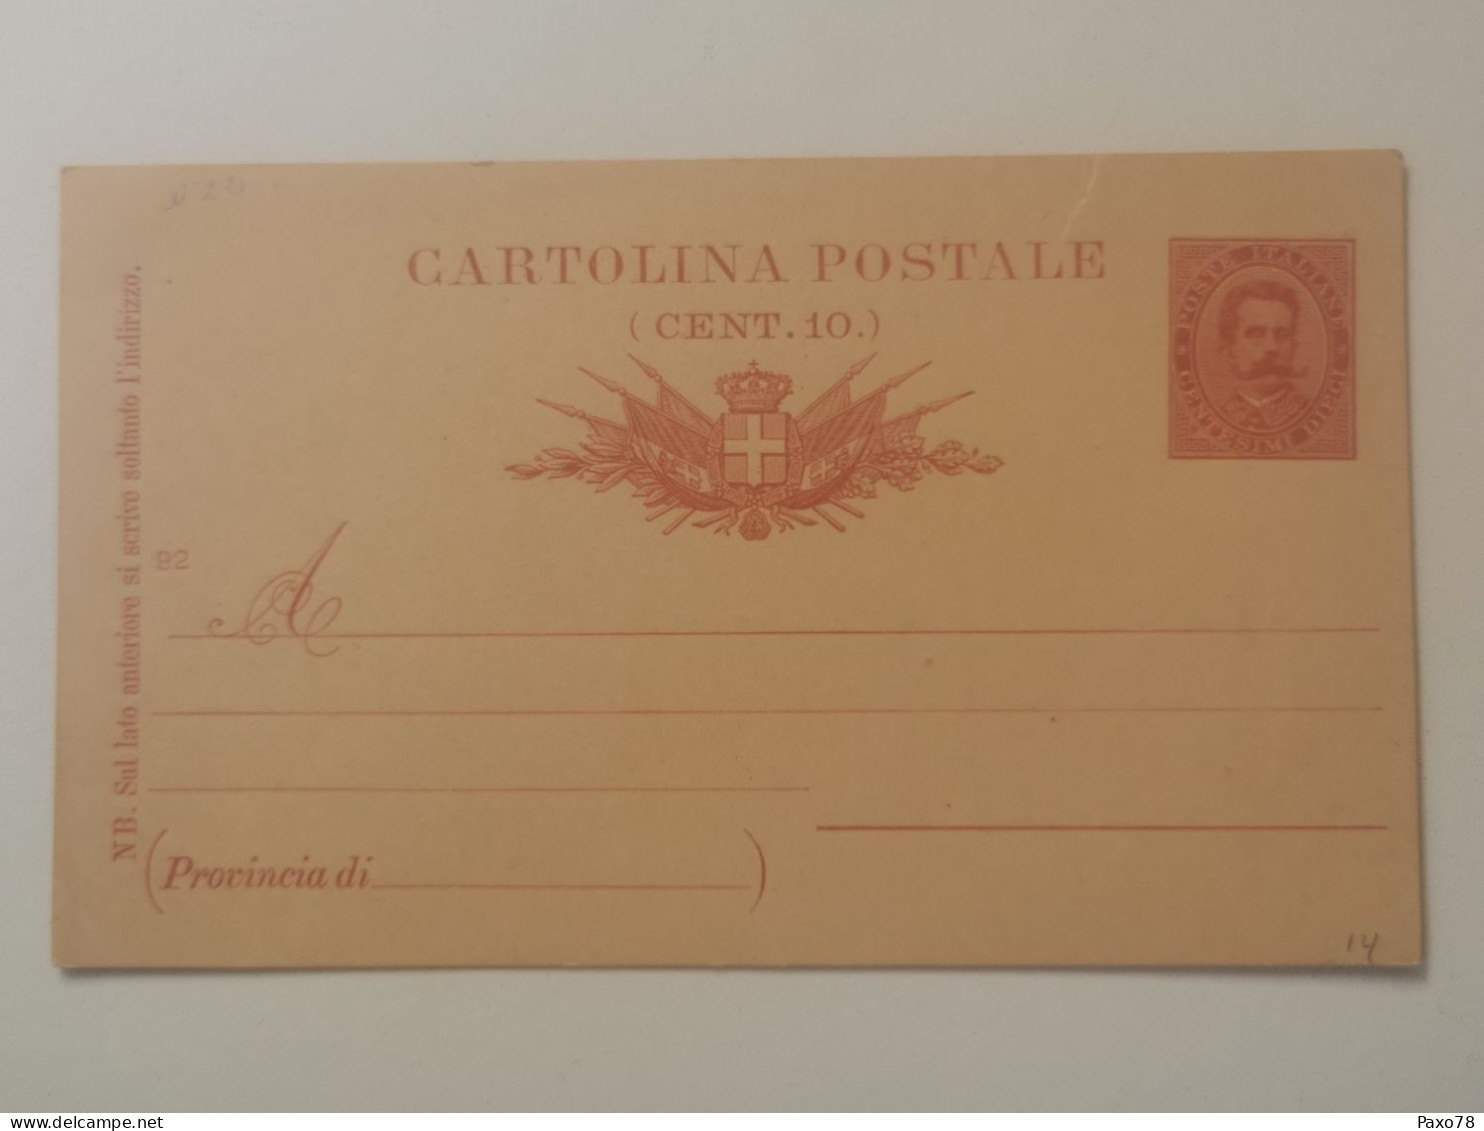 Cartolina Postale, 10C Vierge - Interi Postali